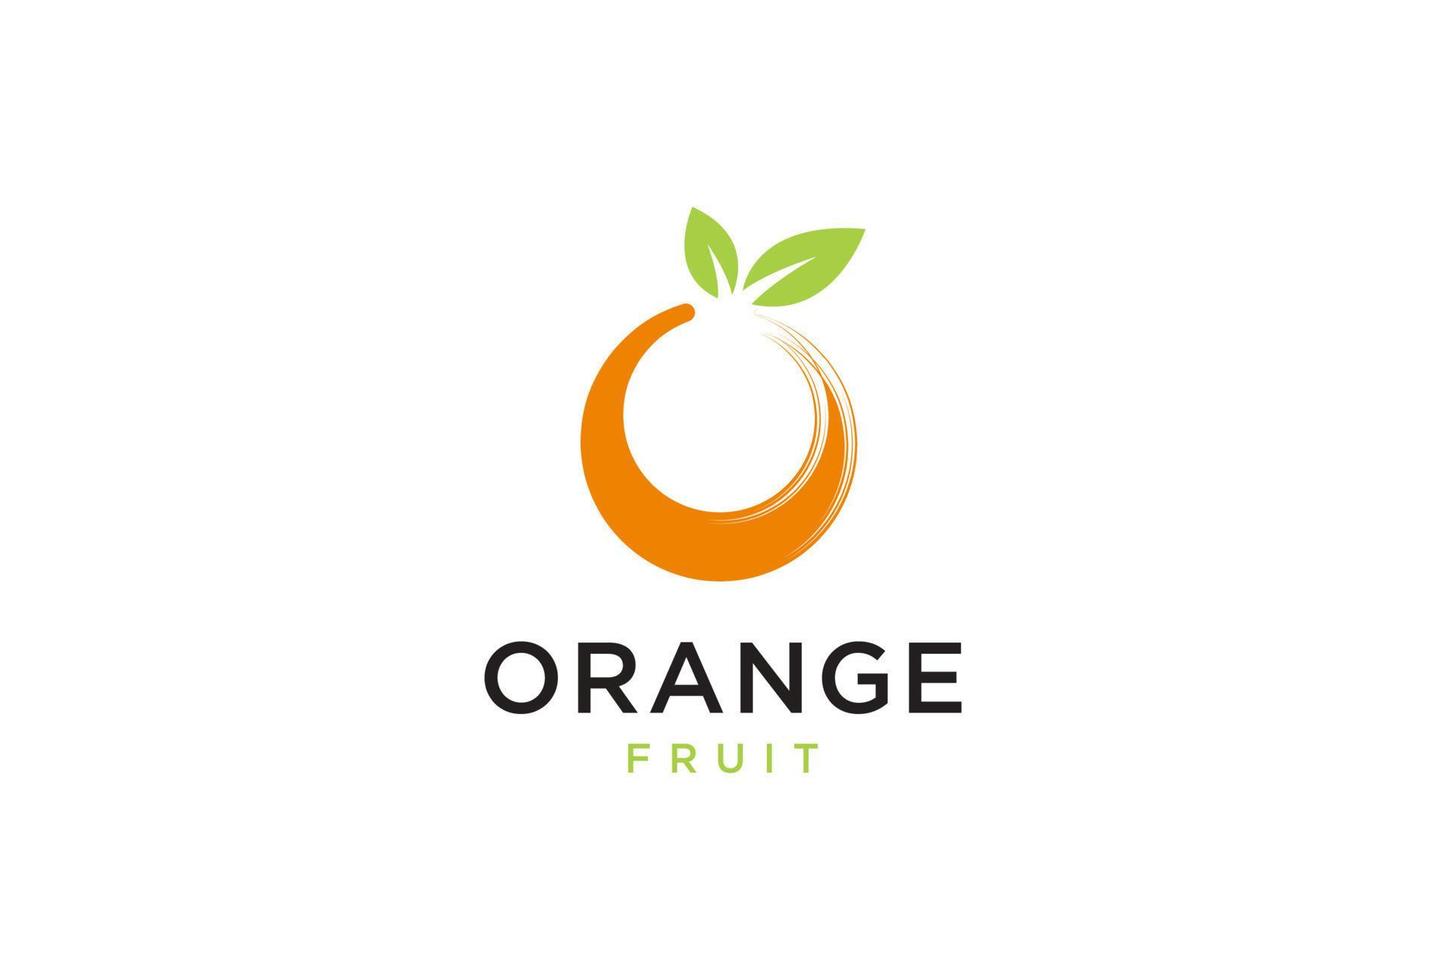 frutta fresca d'arancia, fetta di limone lime pompelmo agrumi con lettera ricciolo iniziale o ispirazione per il design del logo vettore